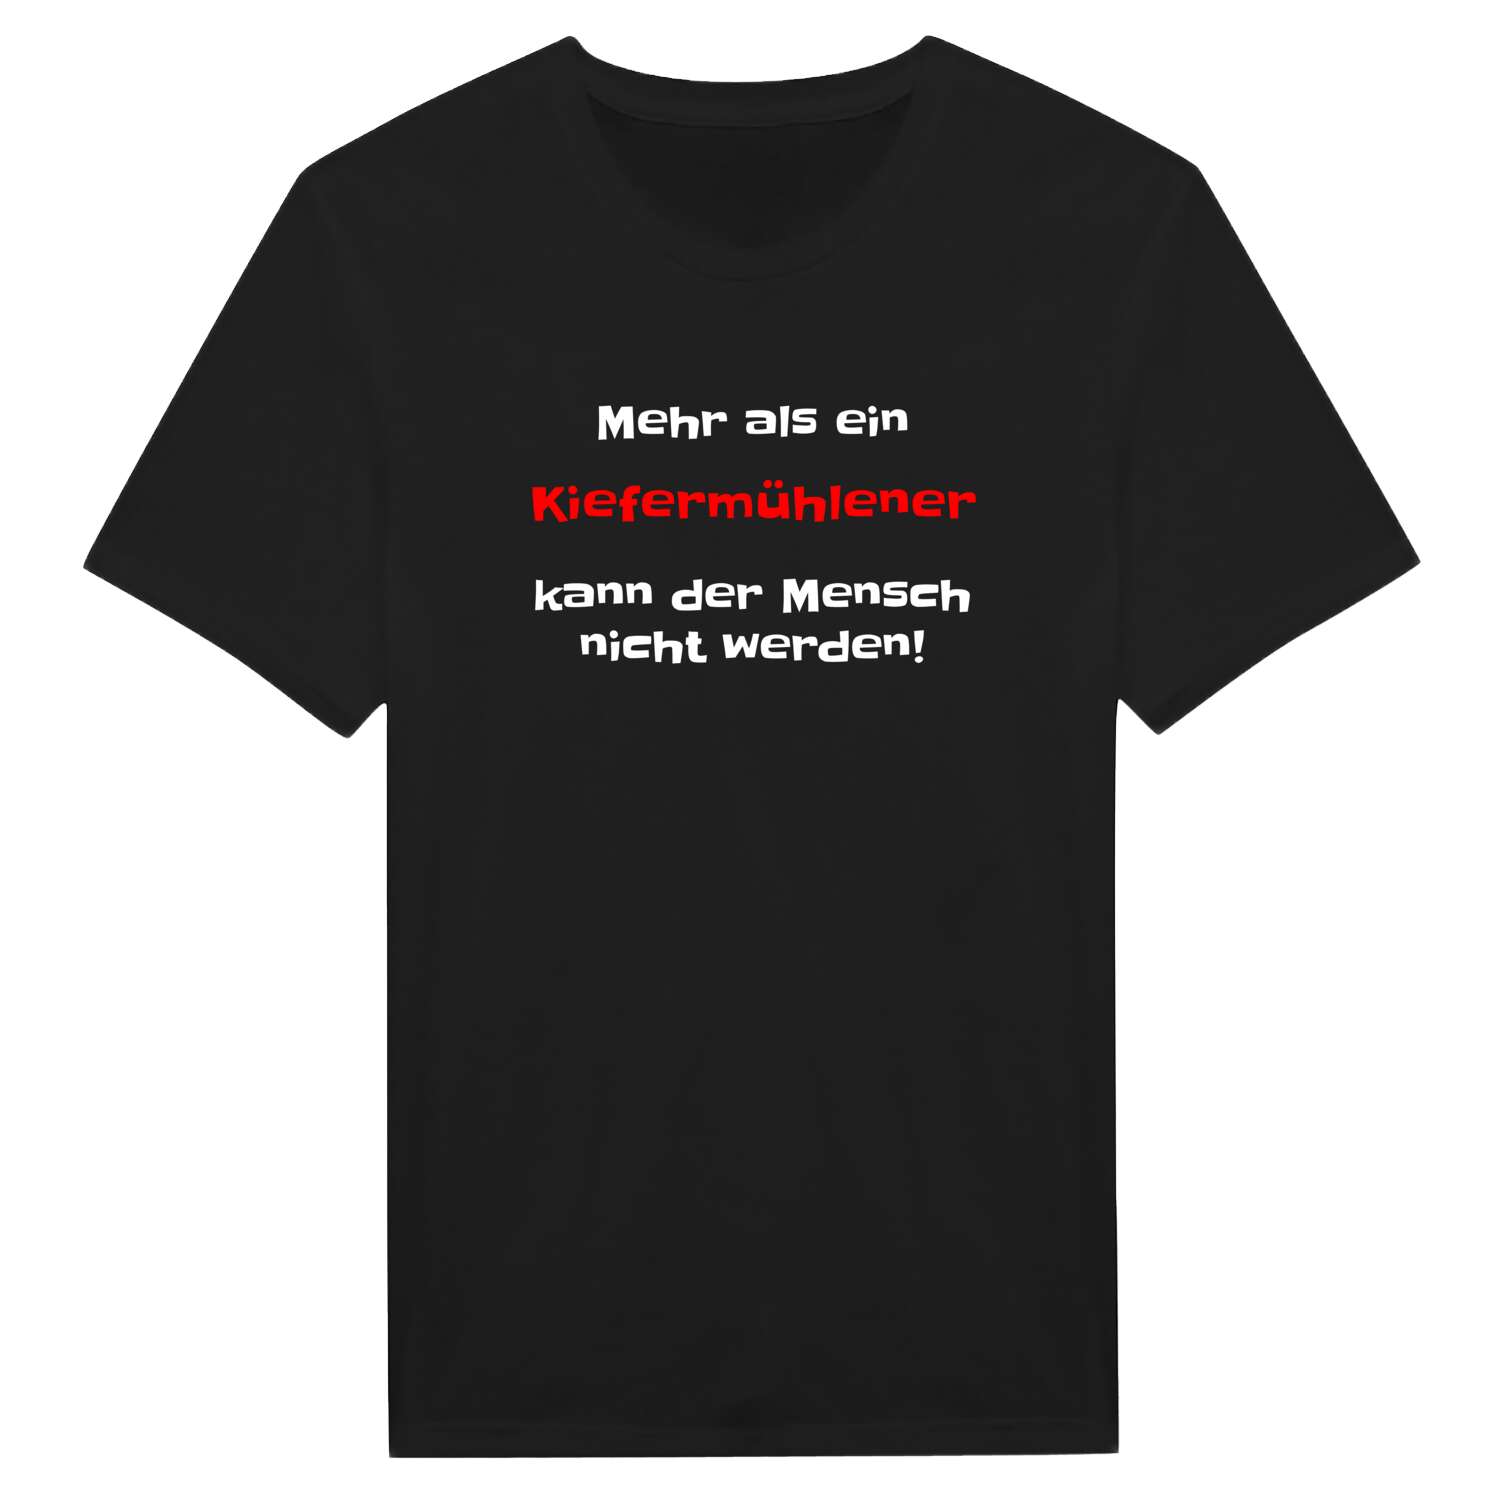 Kiefermühle T-Shirt »Mehr als ein«